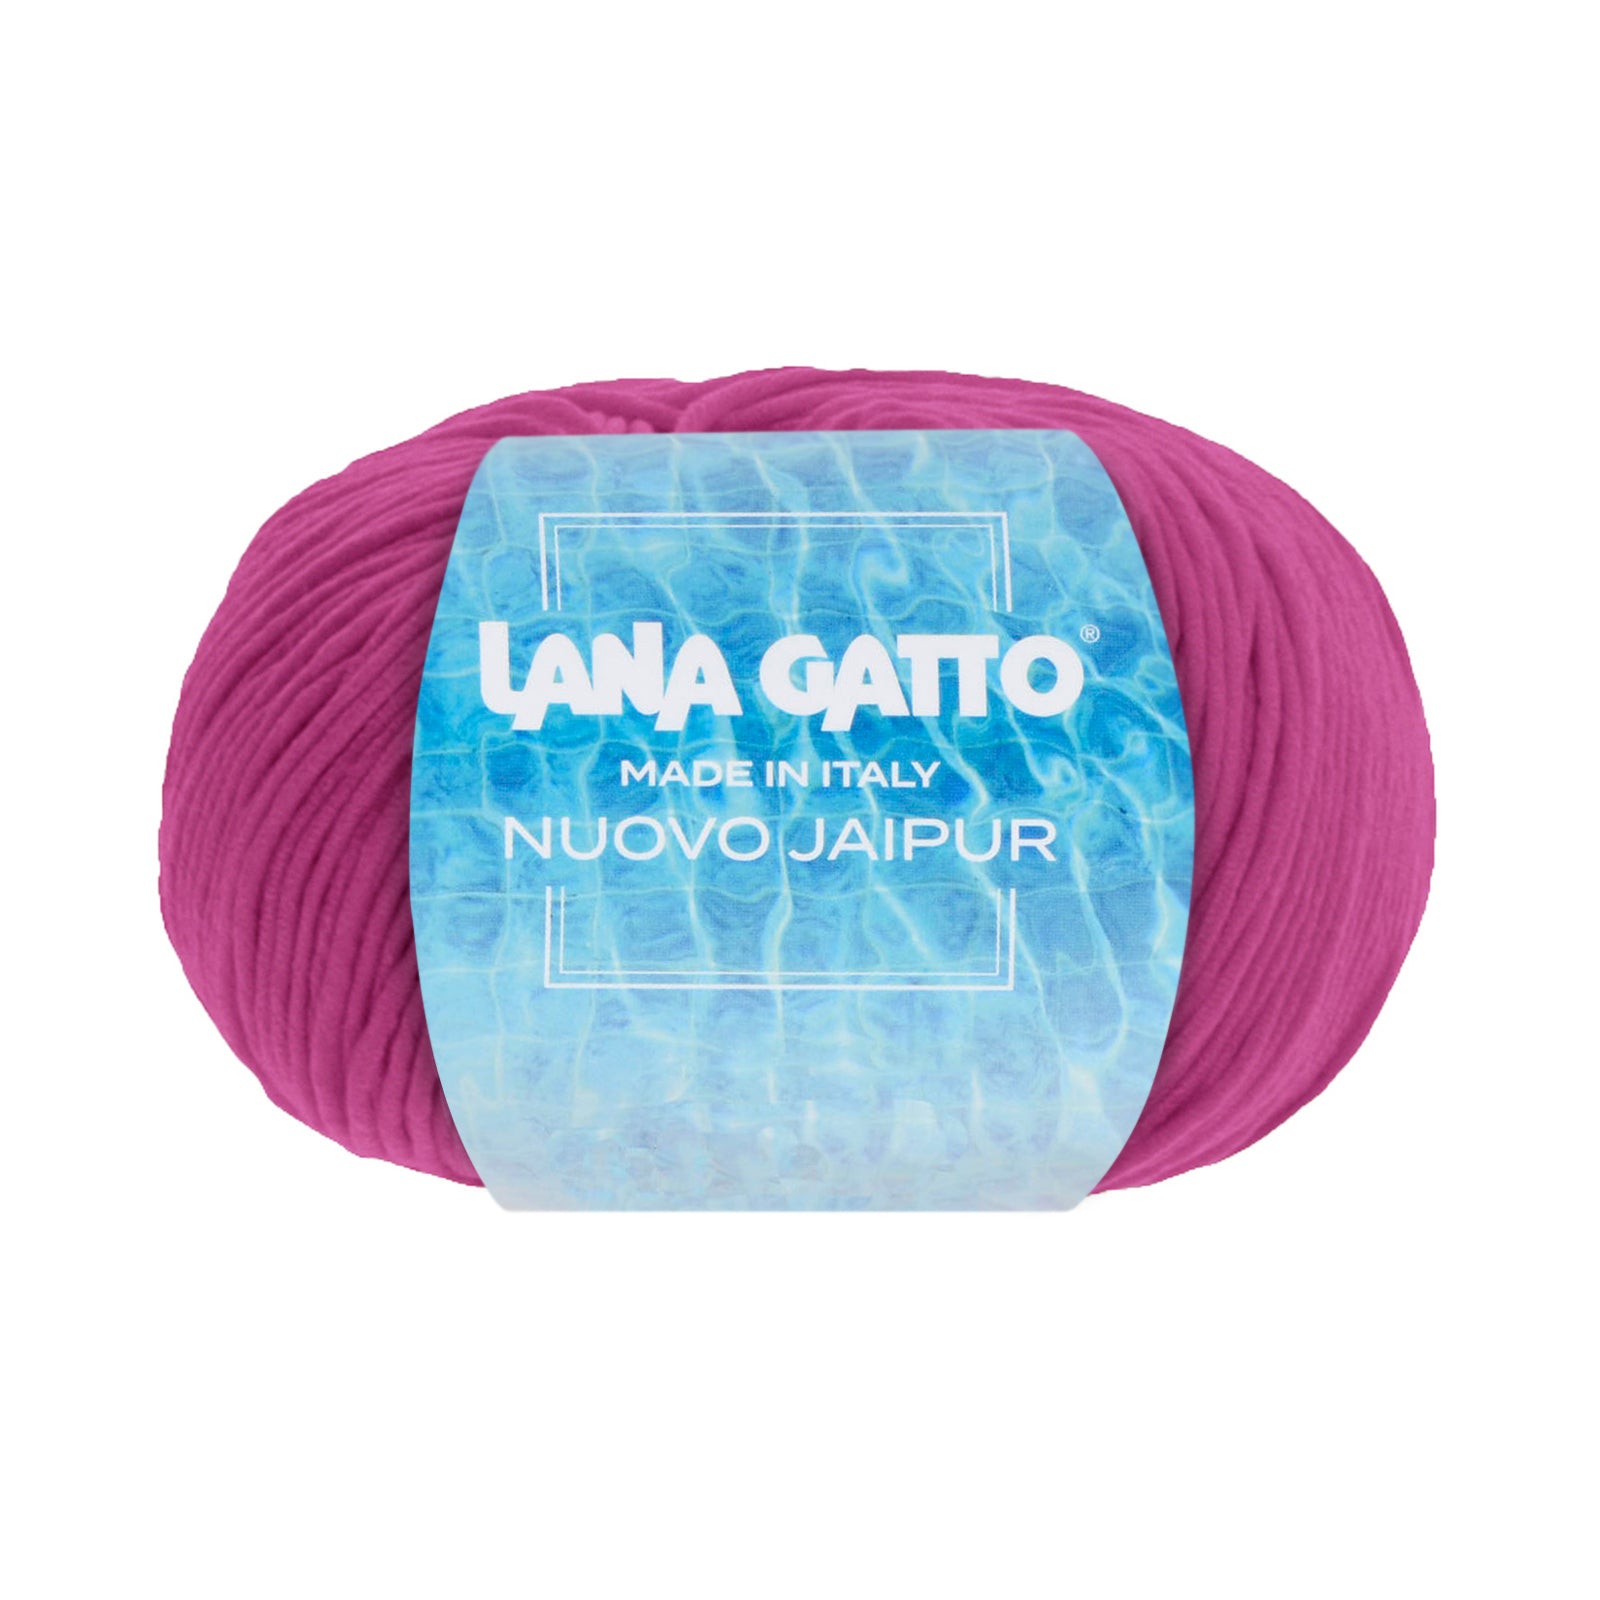 Knäuel aus 100 Makò-Baumwolle, Lana Gatto Nuovo Jaipur Linie – Rosa- und Lilatöne